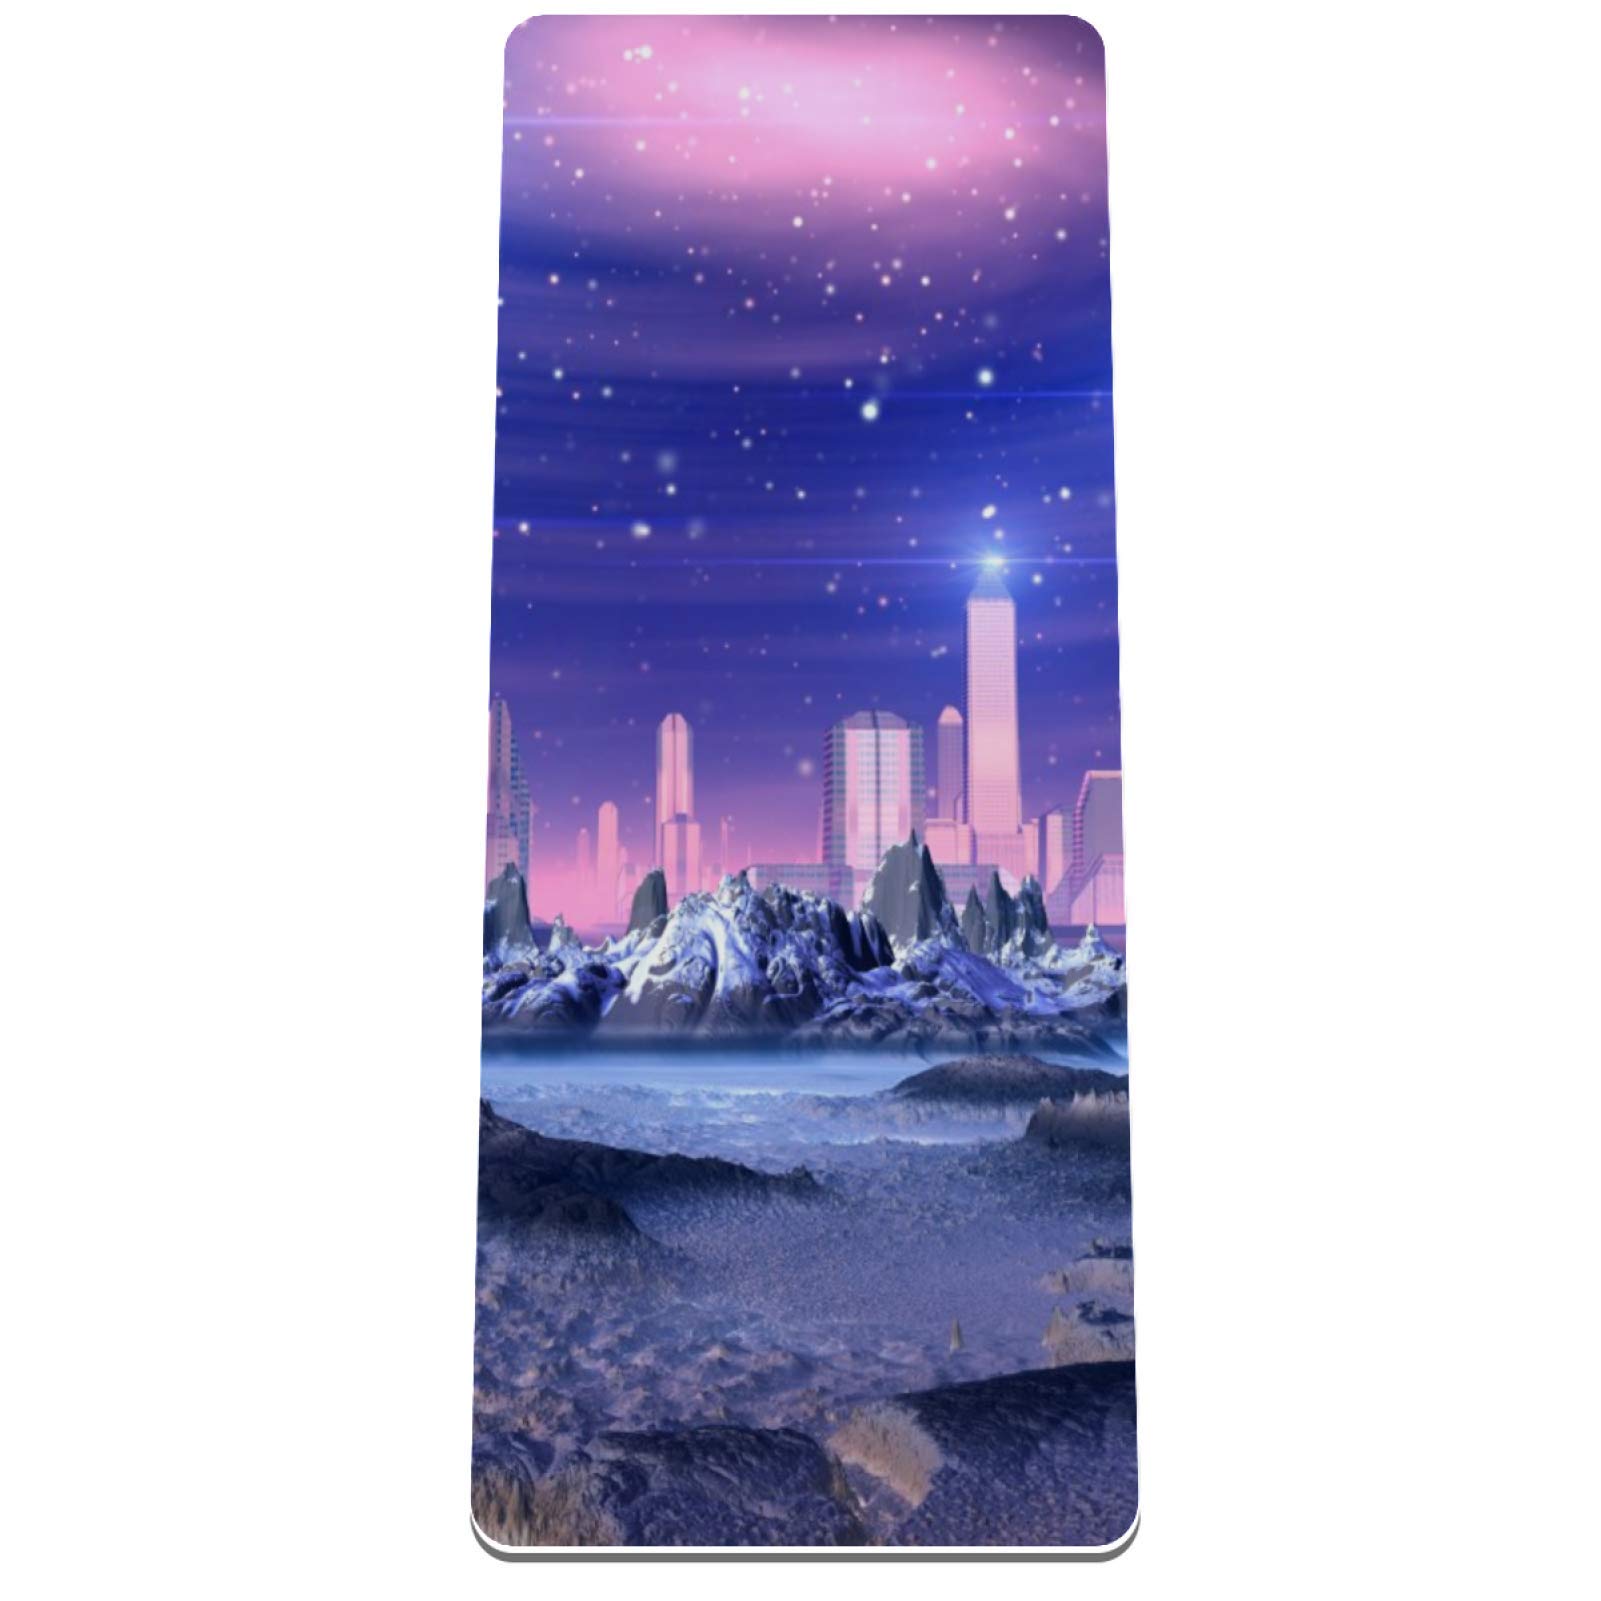 Eslifey Futuristische Alien City Galaxy Yogamatte dicke rutschfeste Yogamatten für Damen und Mädchen Trainingsmatte weiche Pilatesmatten (182,9 x 81,3 cm, 1/3 Zoll dick)